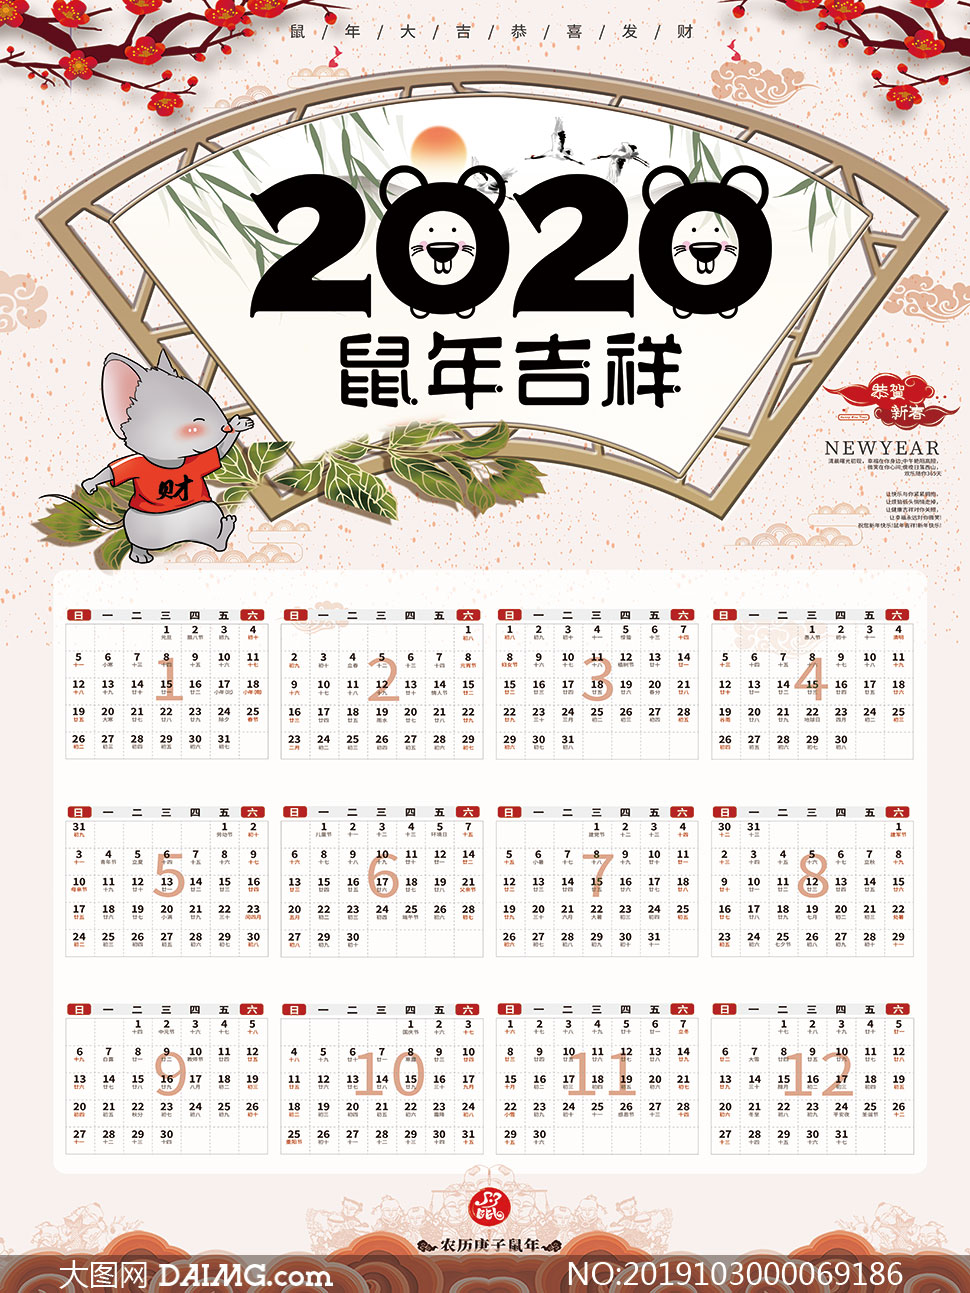 psd素材 日历素材  素材信息          2020鼠年大吉简约年历设计